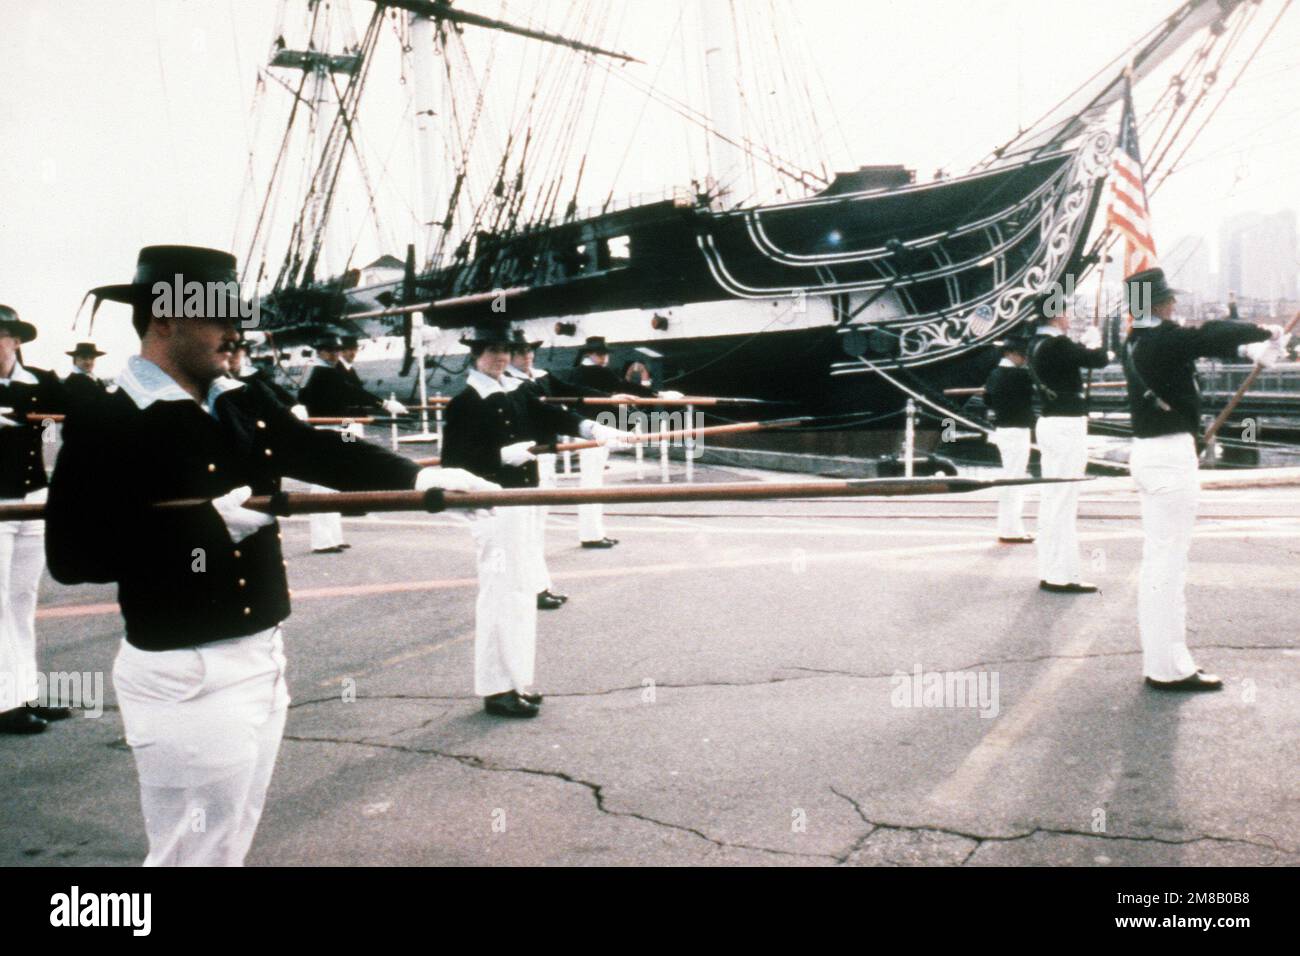 Mitglieder der 44-Pistolen-Segelfregatte USS CONSTITUTION Marscheinheit, der "Pikemen", trainieren für die Eröffnungsparade des designierten Präsidenten George Bush. Basis: Charlestown Navy Yard, Boston Bundesstaat: Massachusetts (MA) Land: Vereinigte Staaten von Amerika (USA) Stockfoto